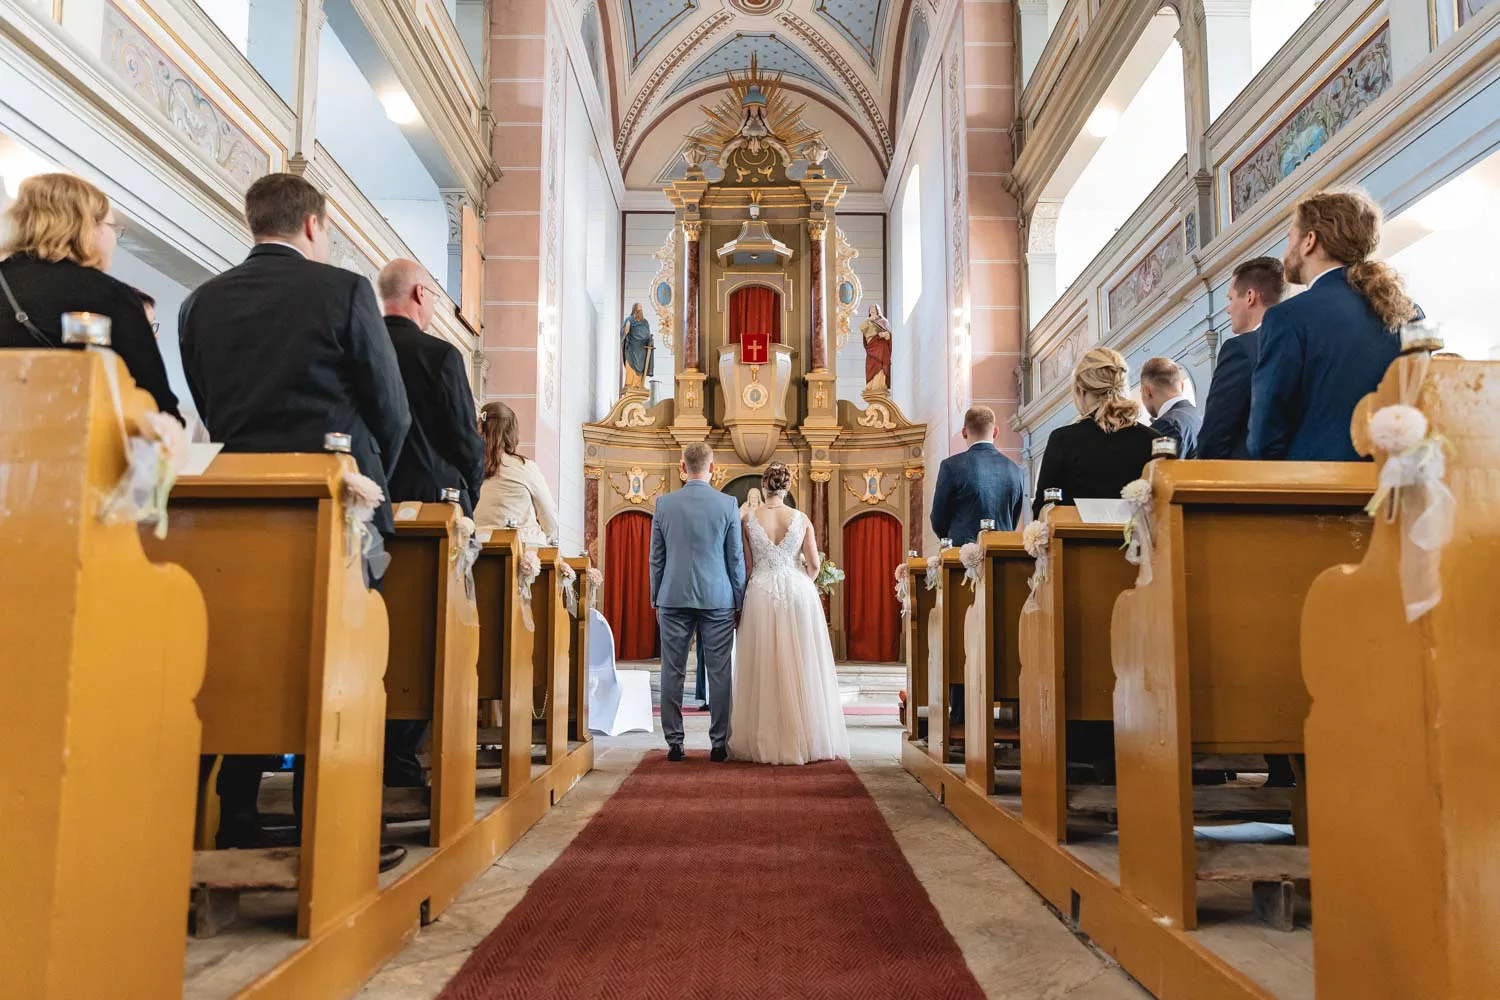 Hochzeit in Thüringen, Hochzeitsfotograf Andreas Balg aus Jena, Foto von einer kirchlichen Hochzeit, 